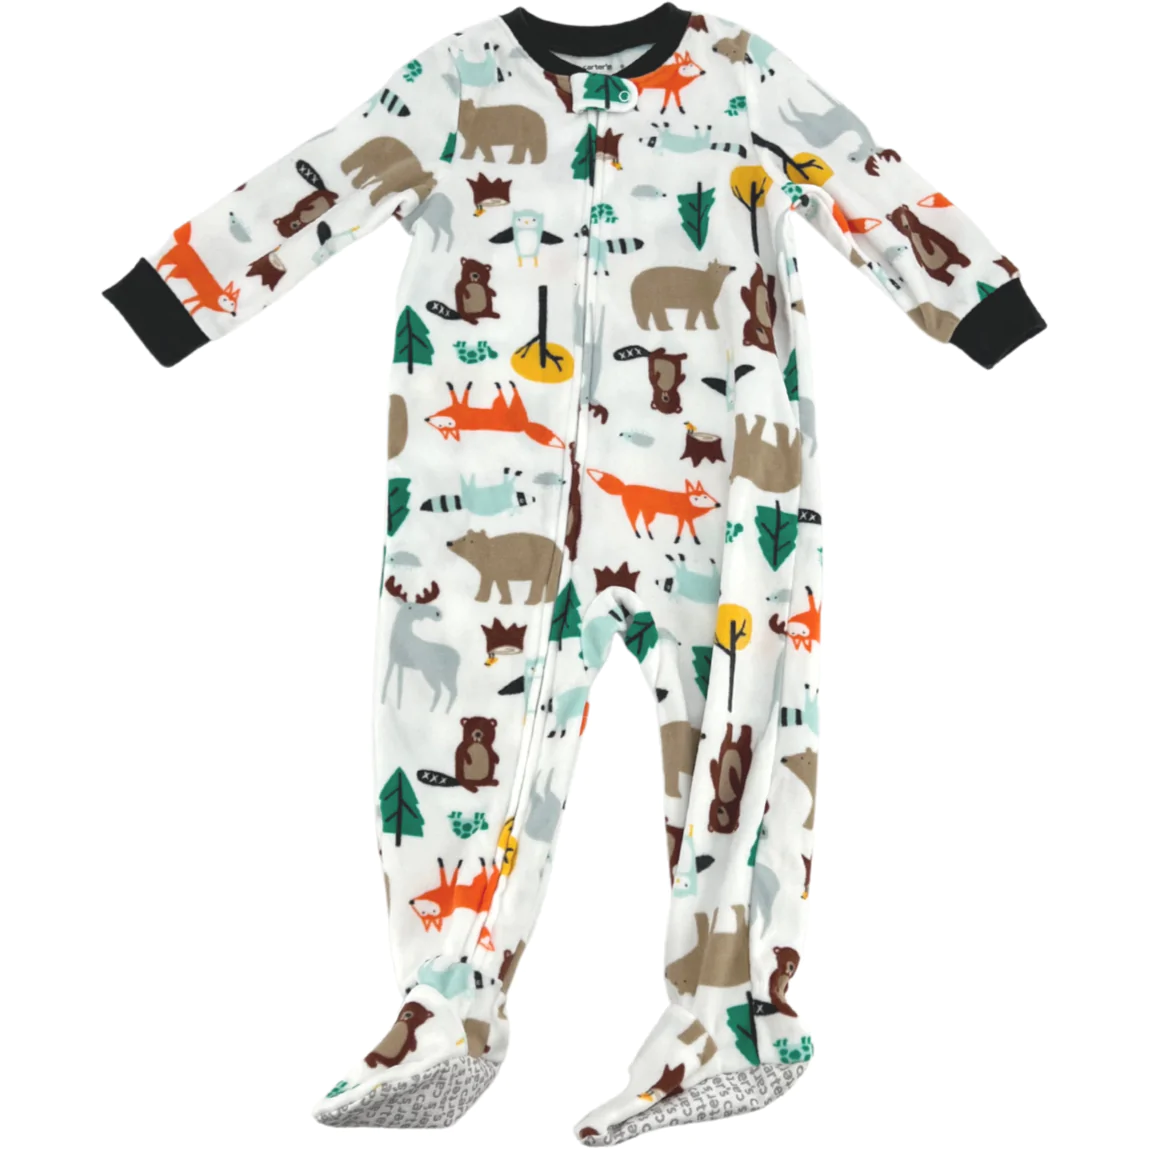 Carter's Kid's One Piece Pyjama / Zip Up Pyjama / Forest Animal Theme / Size 18M